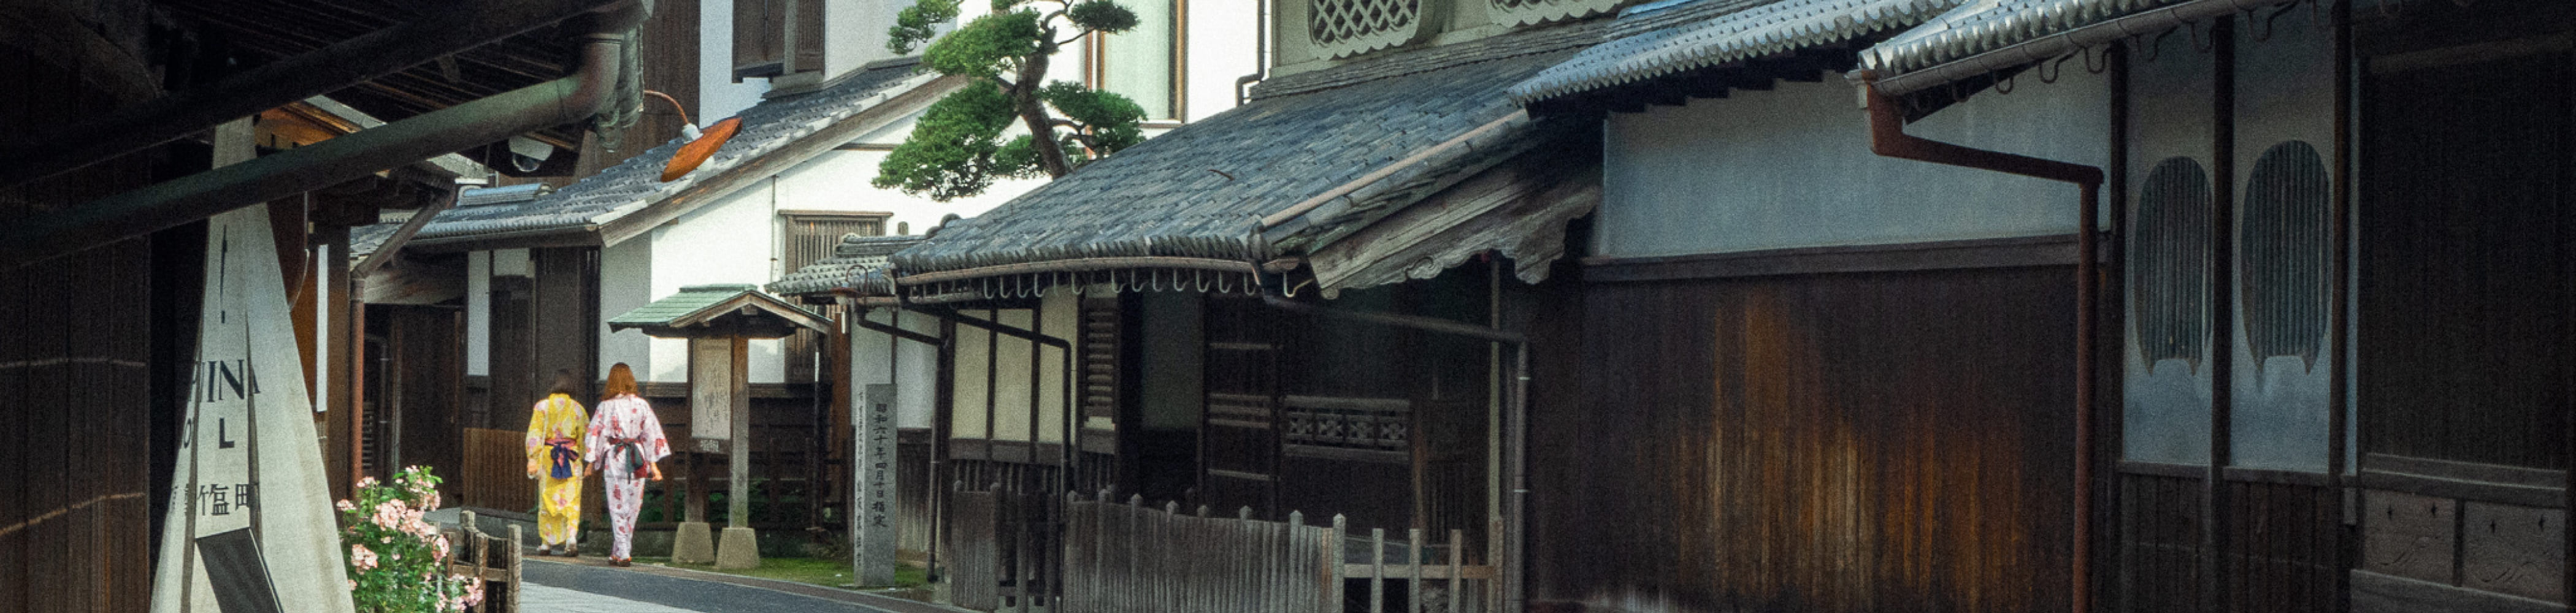 写真：竹原市の古風な街並み。参道を浴衣を着た女性が歩いている。